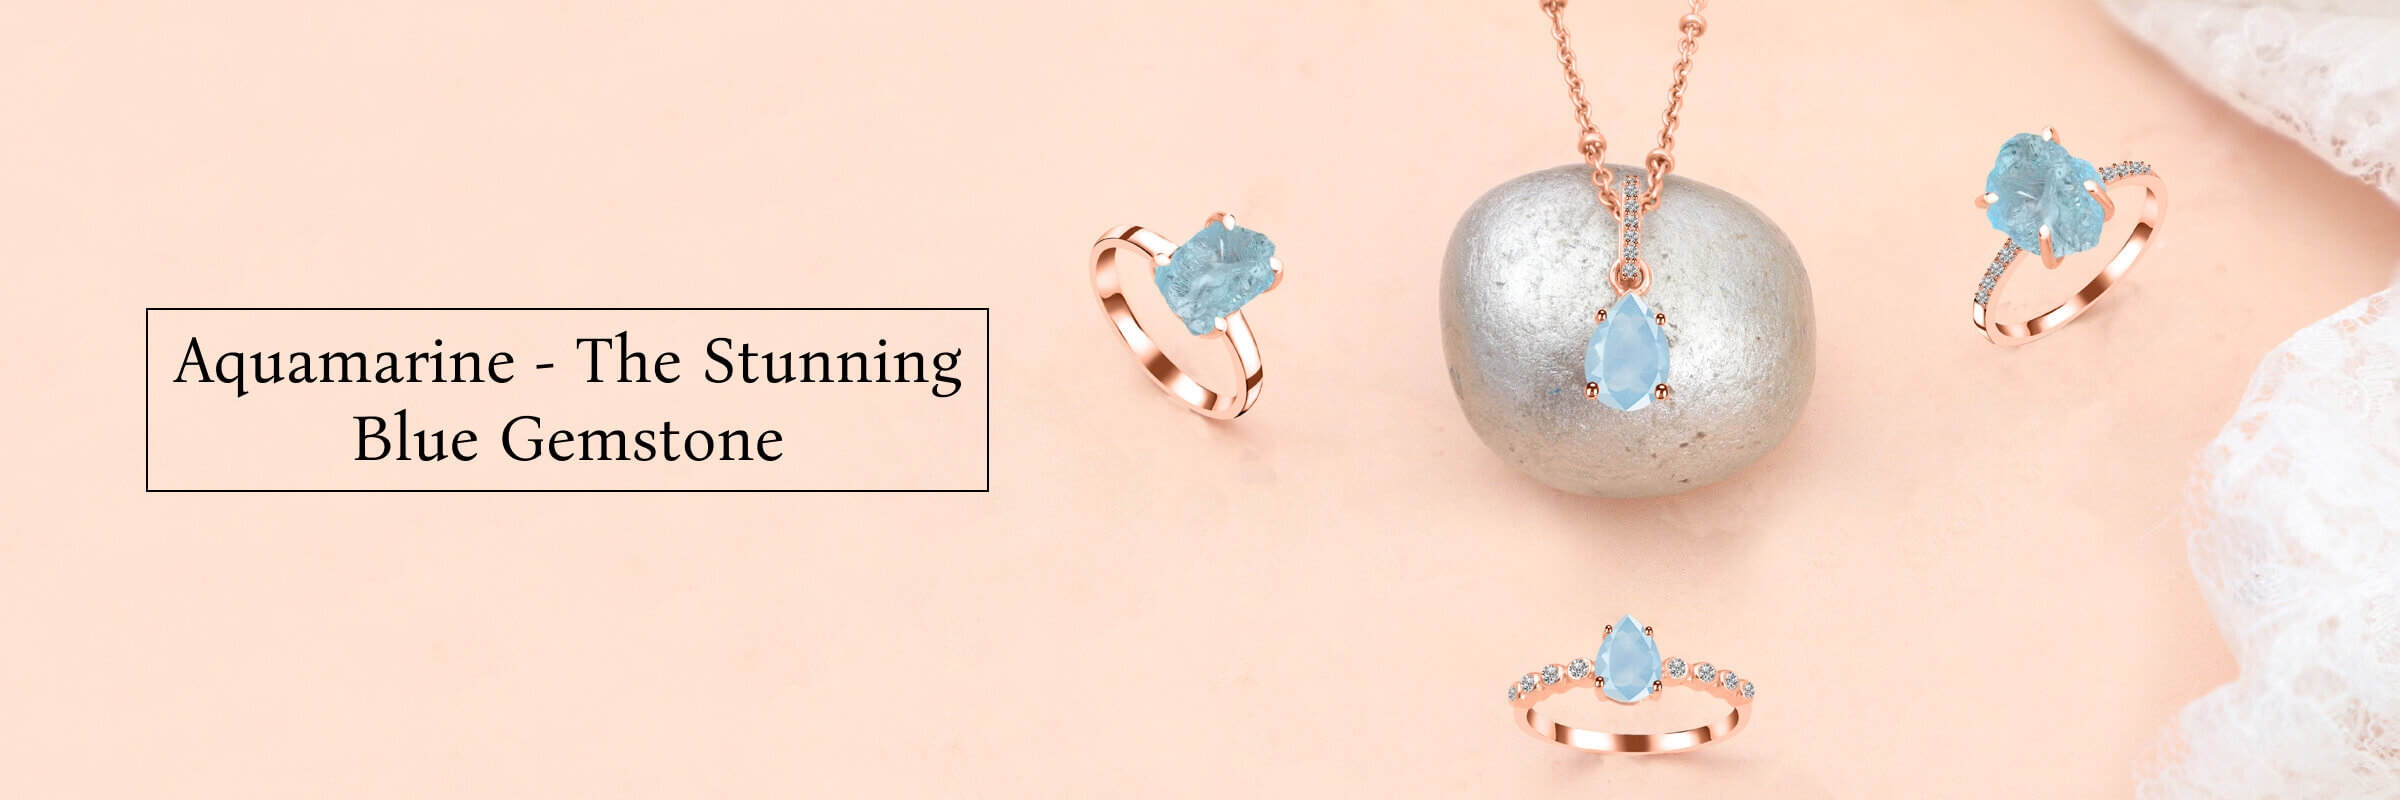 Where to Buy Aquamarine Jewelry at Wholesale Price? 1